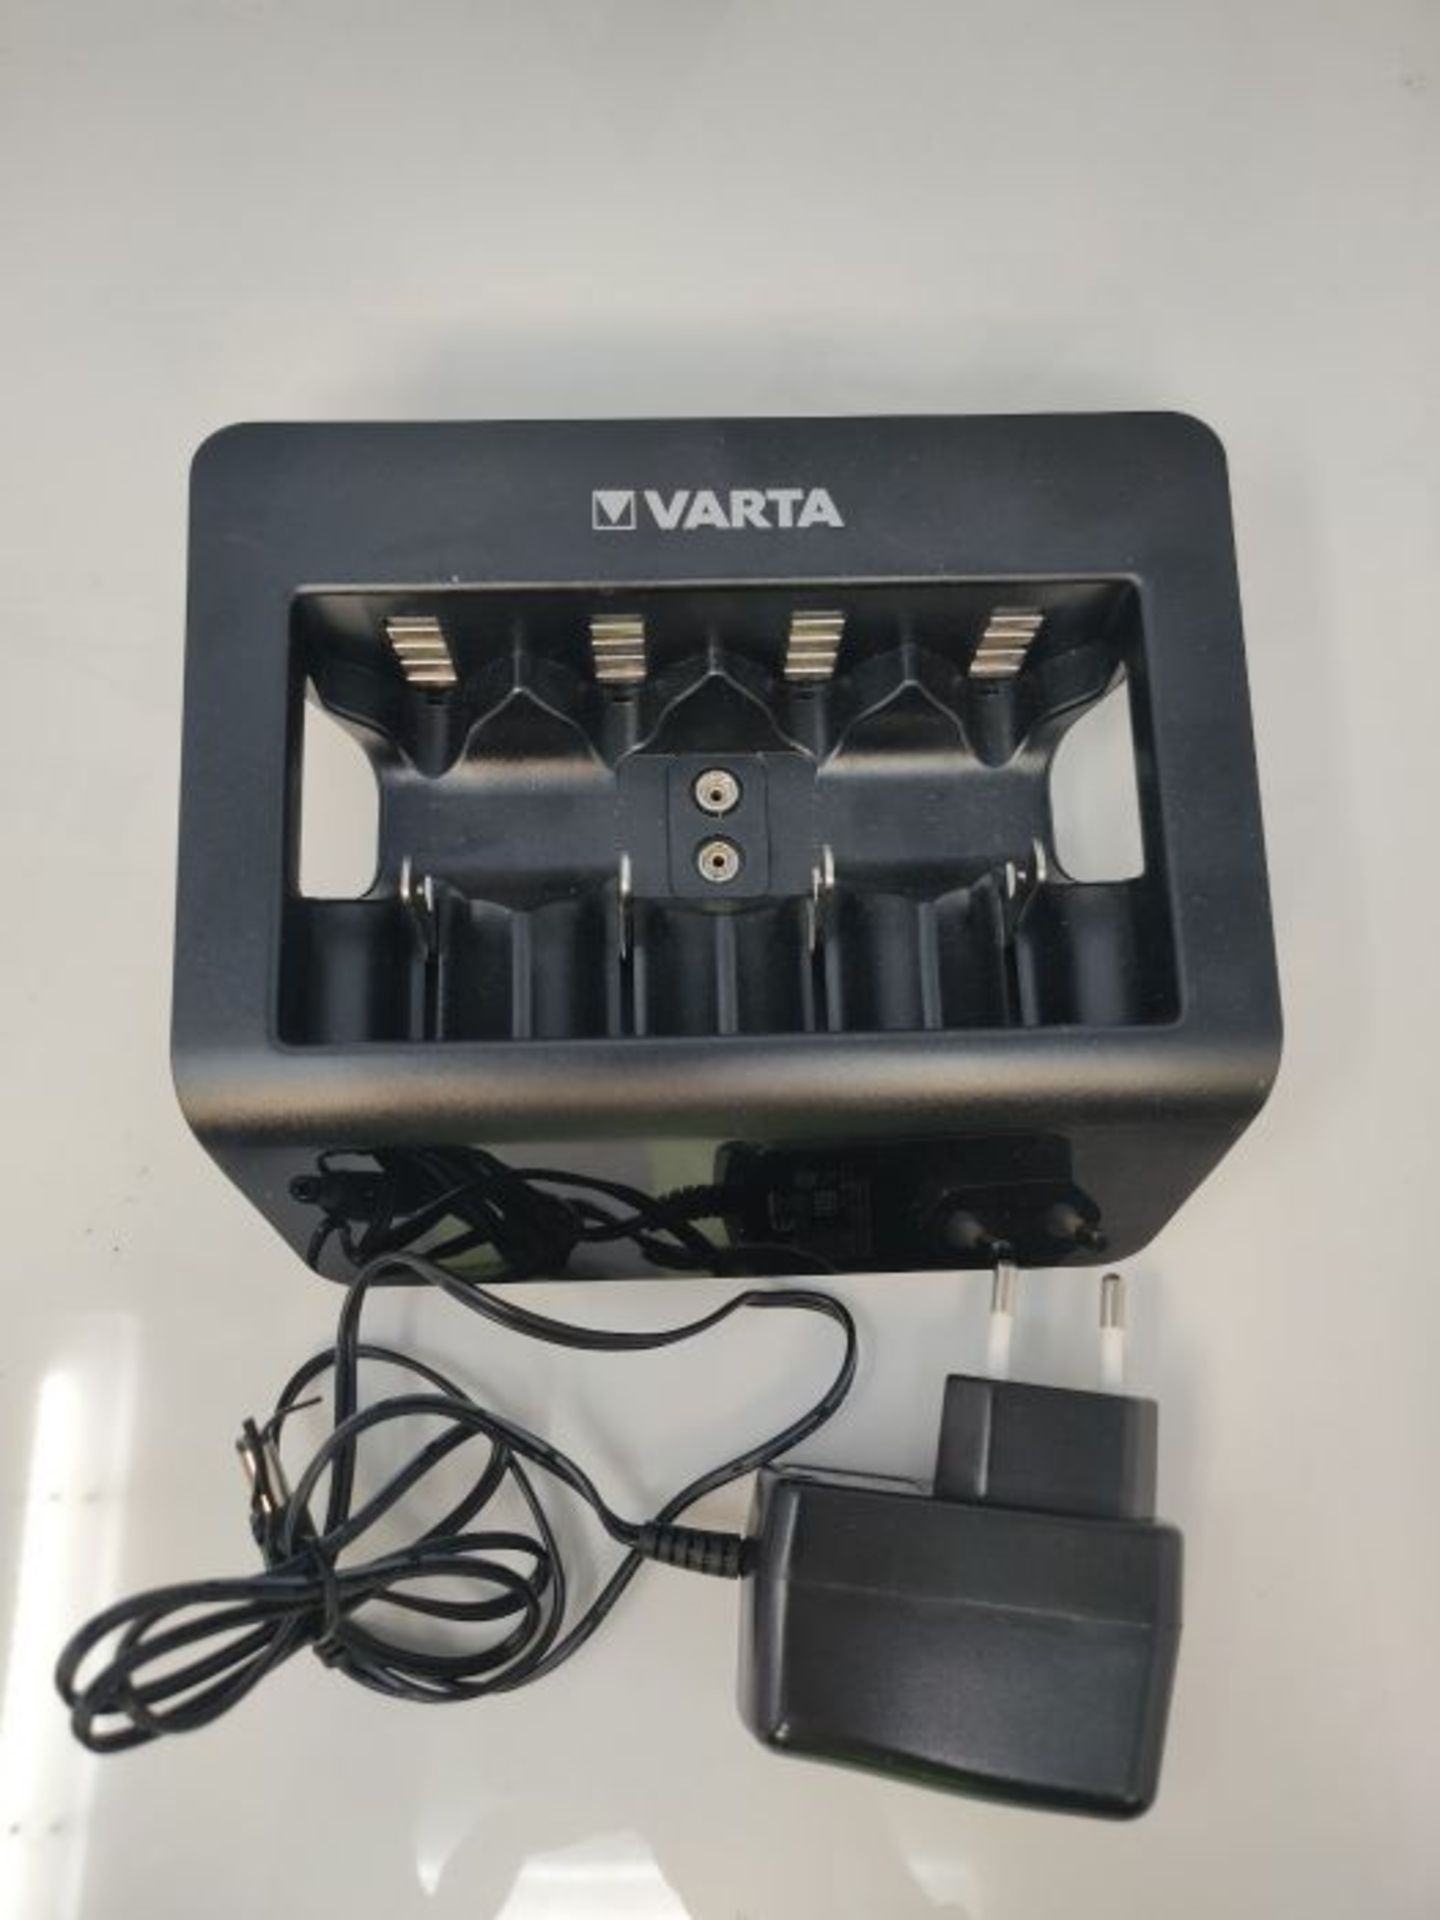 VARTA Universal Charger+, Ladegerät für Akkus in AA/AAA/9V und USB Geräte, Einzelsc - Image 3 of 3